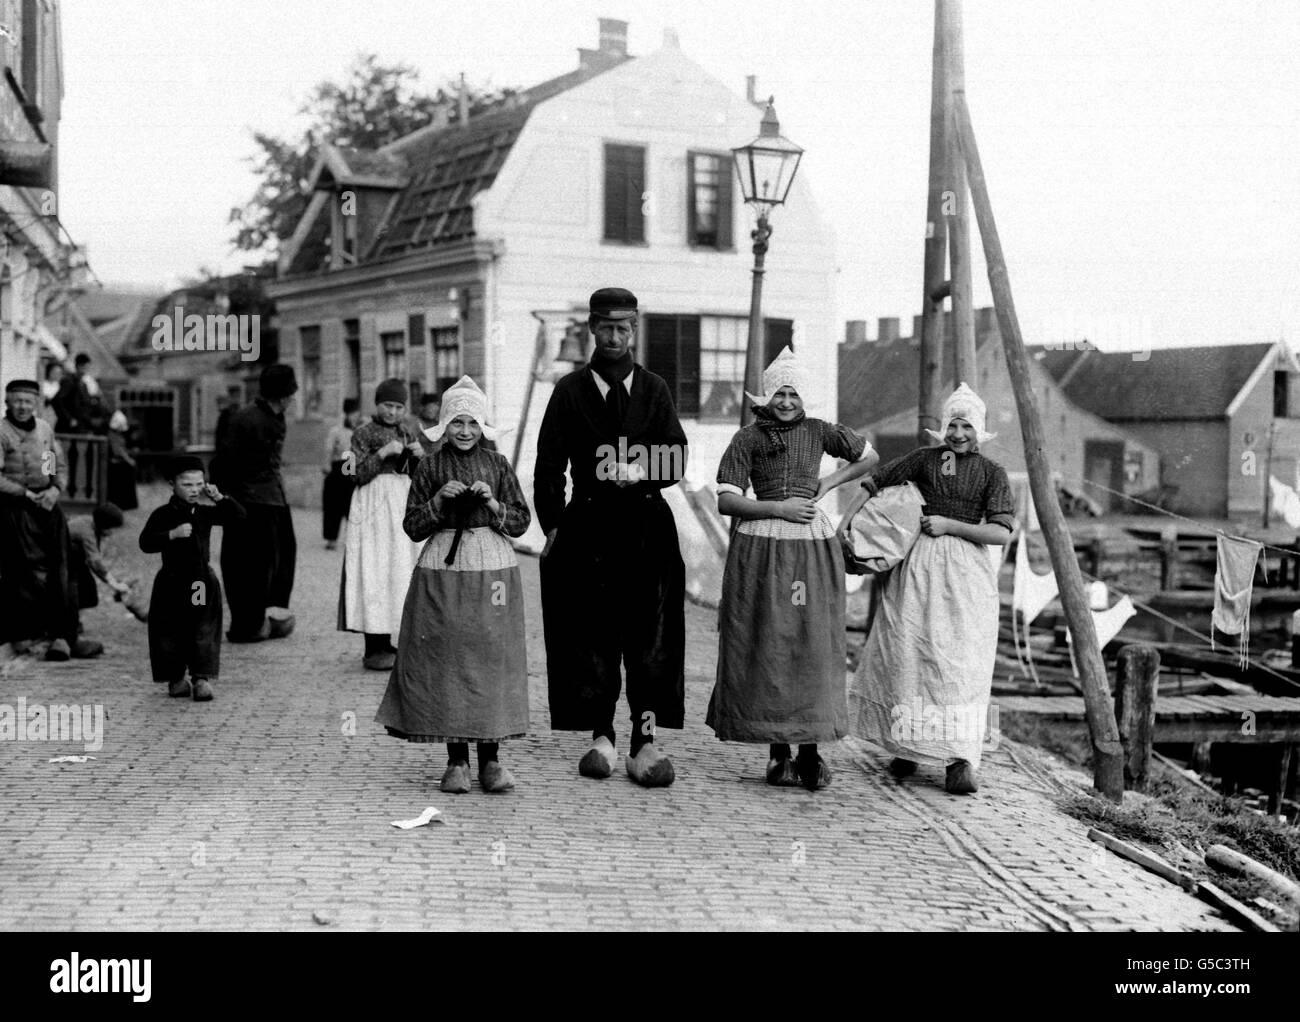 PAYS-BAS 1910: Pêcheurs portant une robe traditionnelle, y compris des sabots et des casquettes en dentelle, dans le port hollandais de Volendam. Banque D'Images